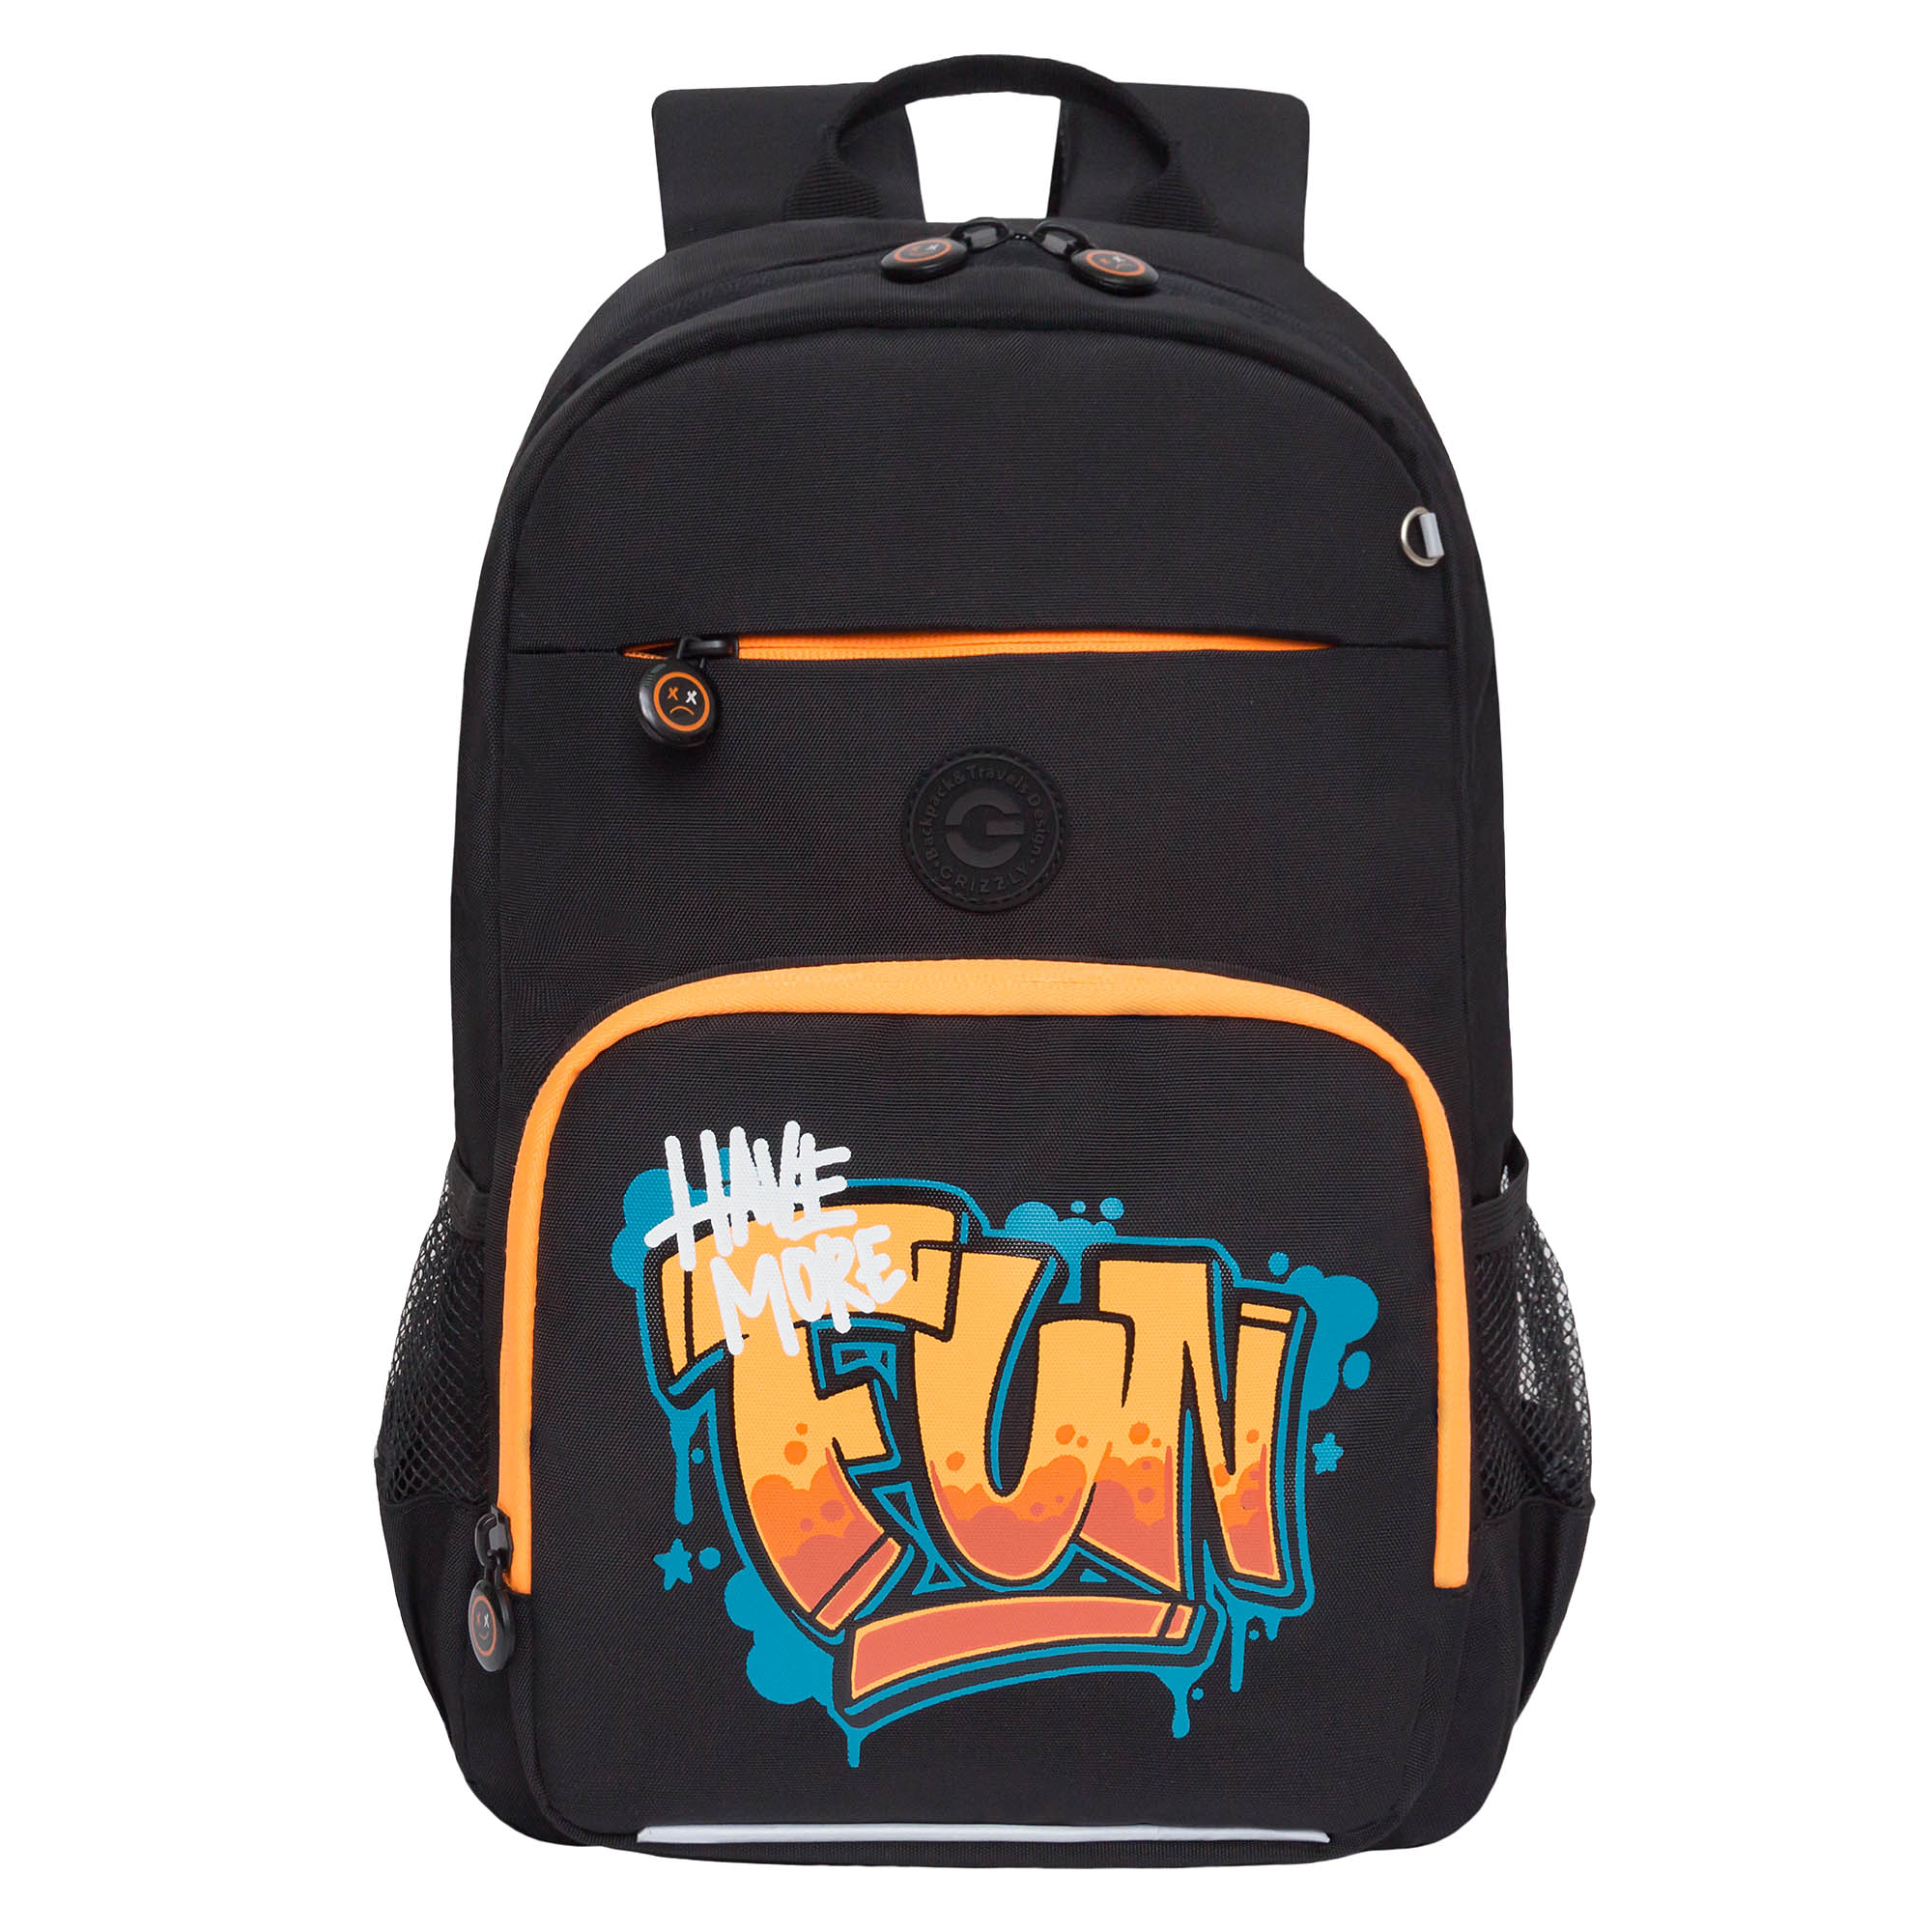 Рюкзак школьный GRIZZLY с карманом для ноутбука 13, RB-455-5/1 черный, оранжевый